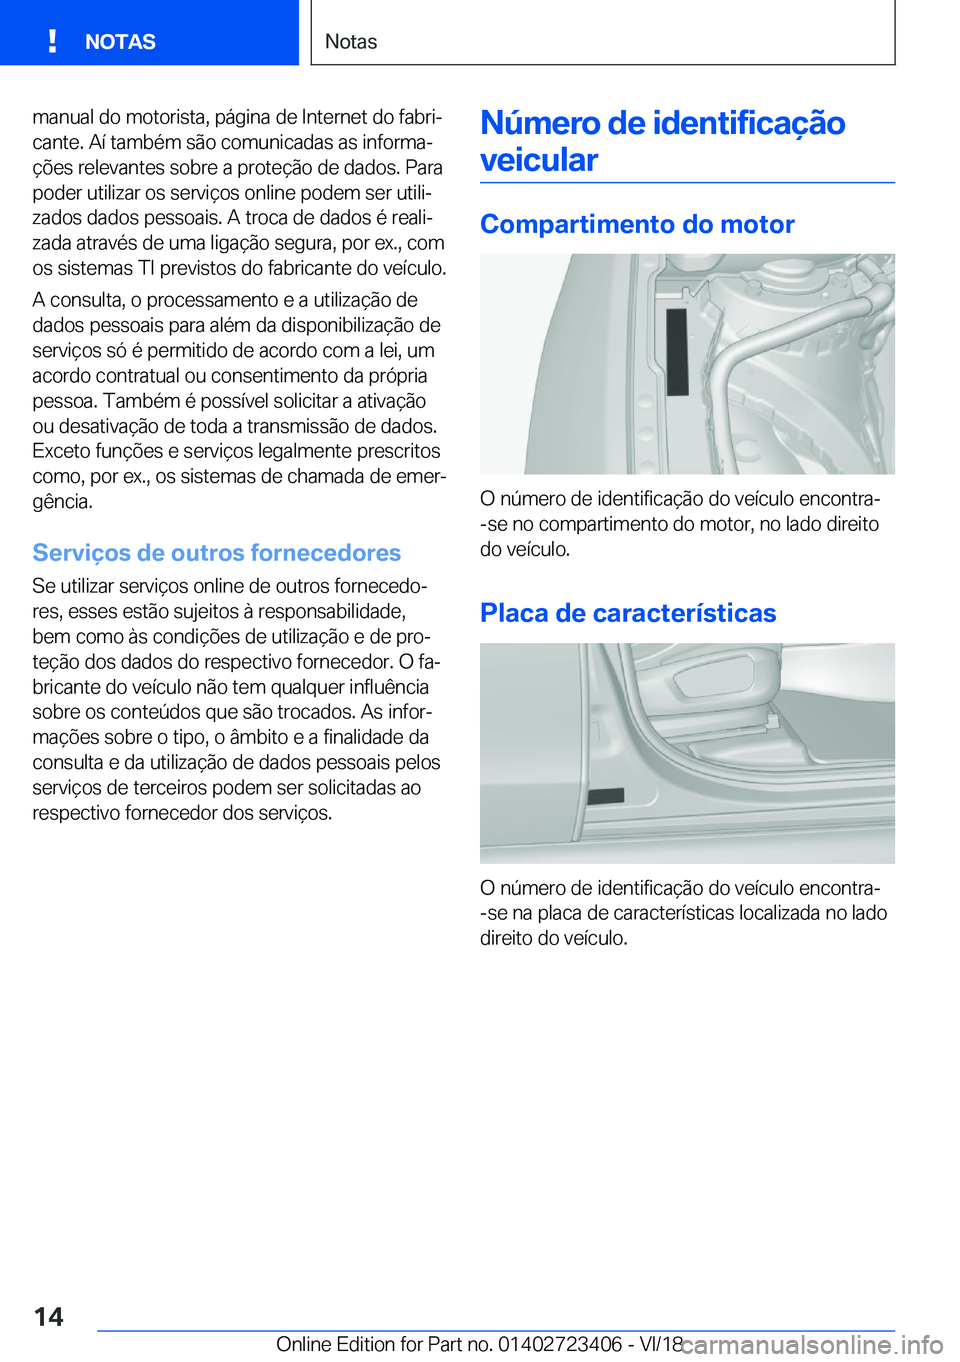 BMW 2 SERIES COUPE 2019  Manual do condutor (in Portuguese) �m�a�n�u�a�l��d�o��m�o�t�o�r�i�s�t�a�,��p�á�g�i�n�a��d�e��I�n�t�e�r�n�e�t��d�o��f�a�b�r�iª�c�a�n�t�e�.��A�